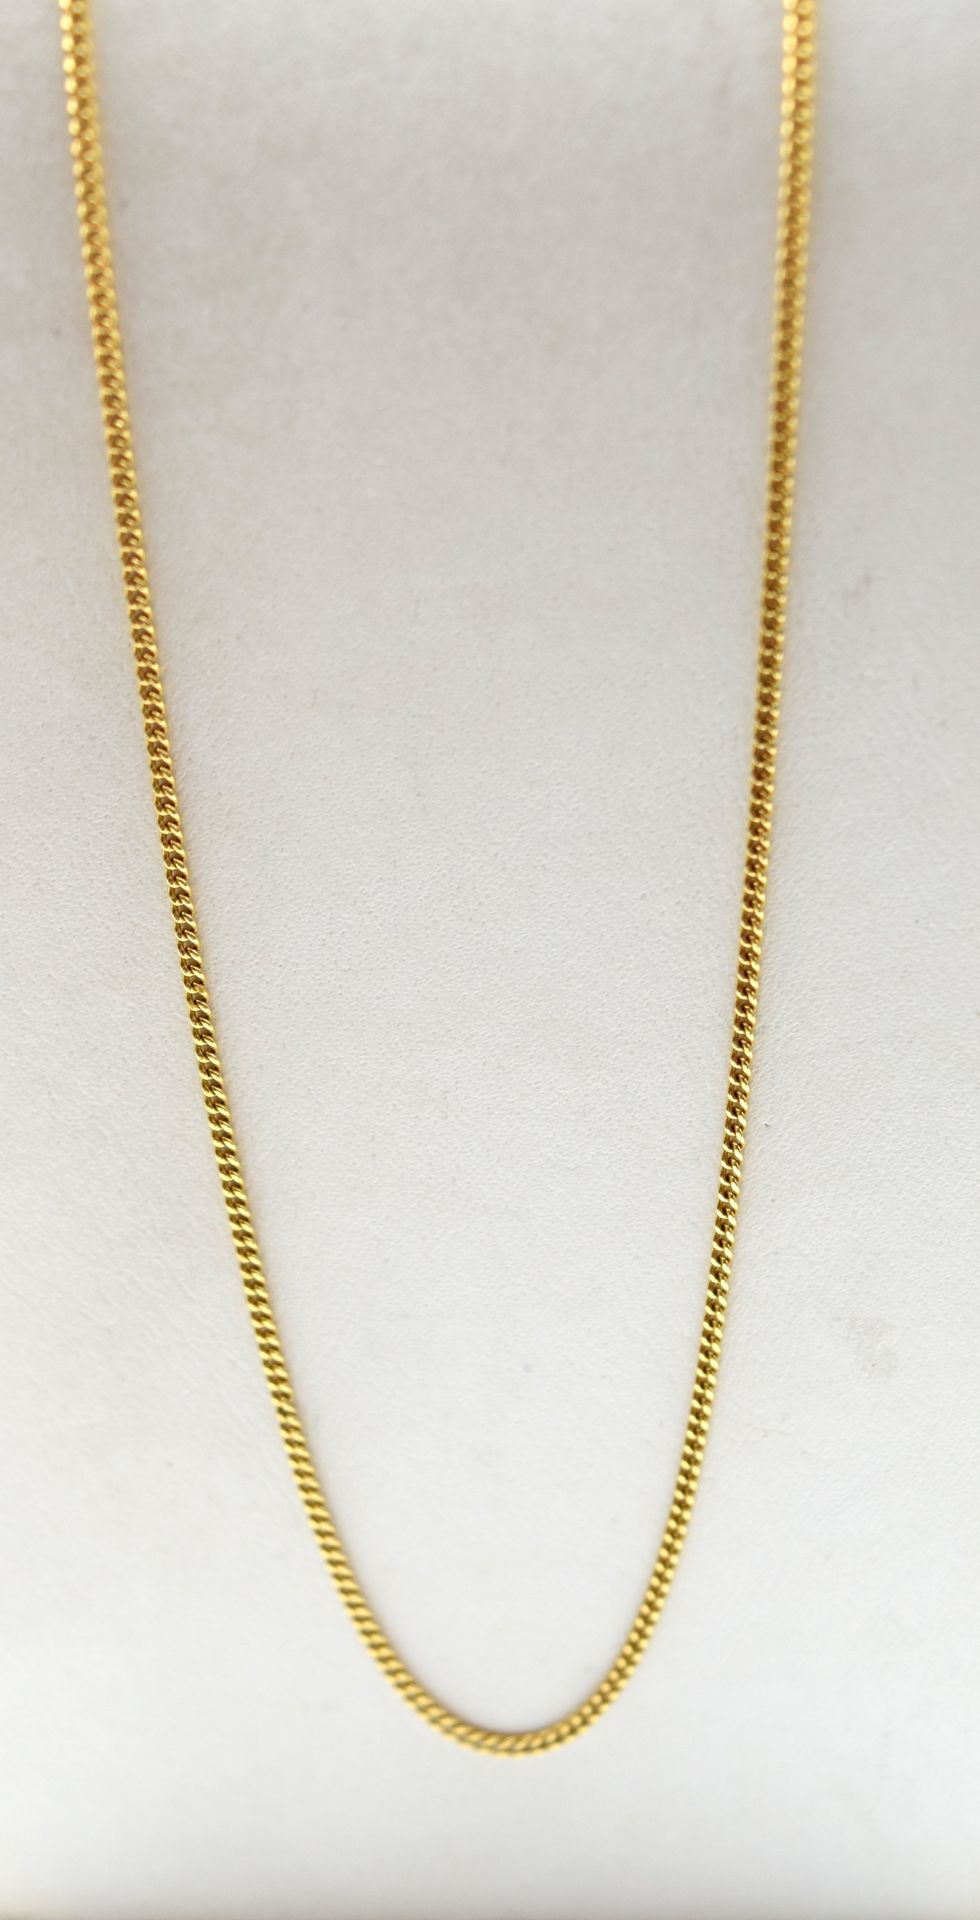 Null Necklace in 18 ct yellow gold - 3.1 g (51 cm) \nBeschrijving in het Nederla&hellip;